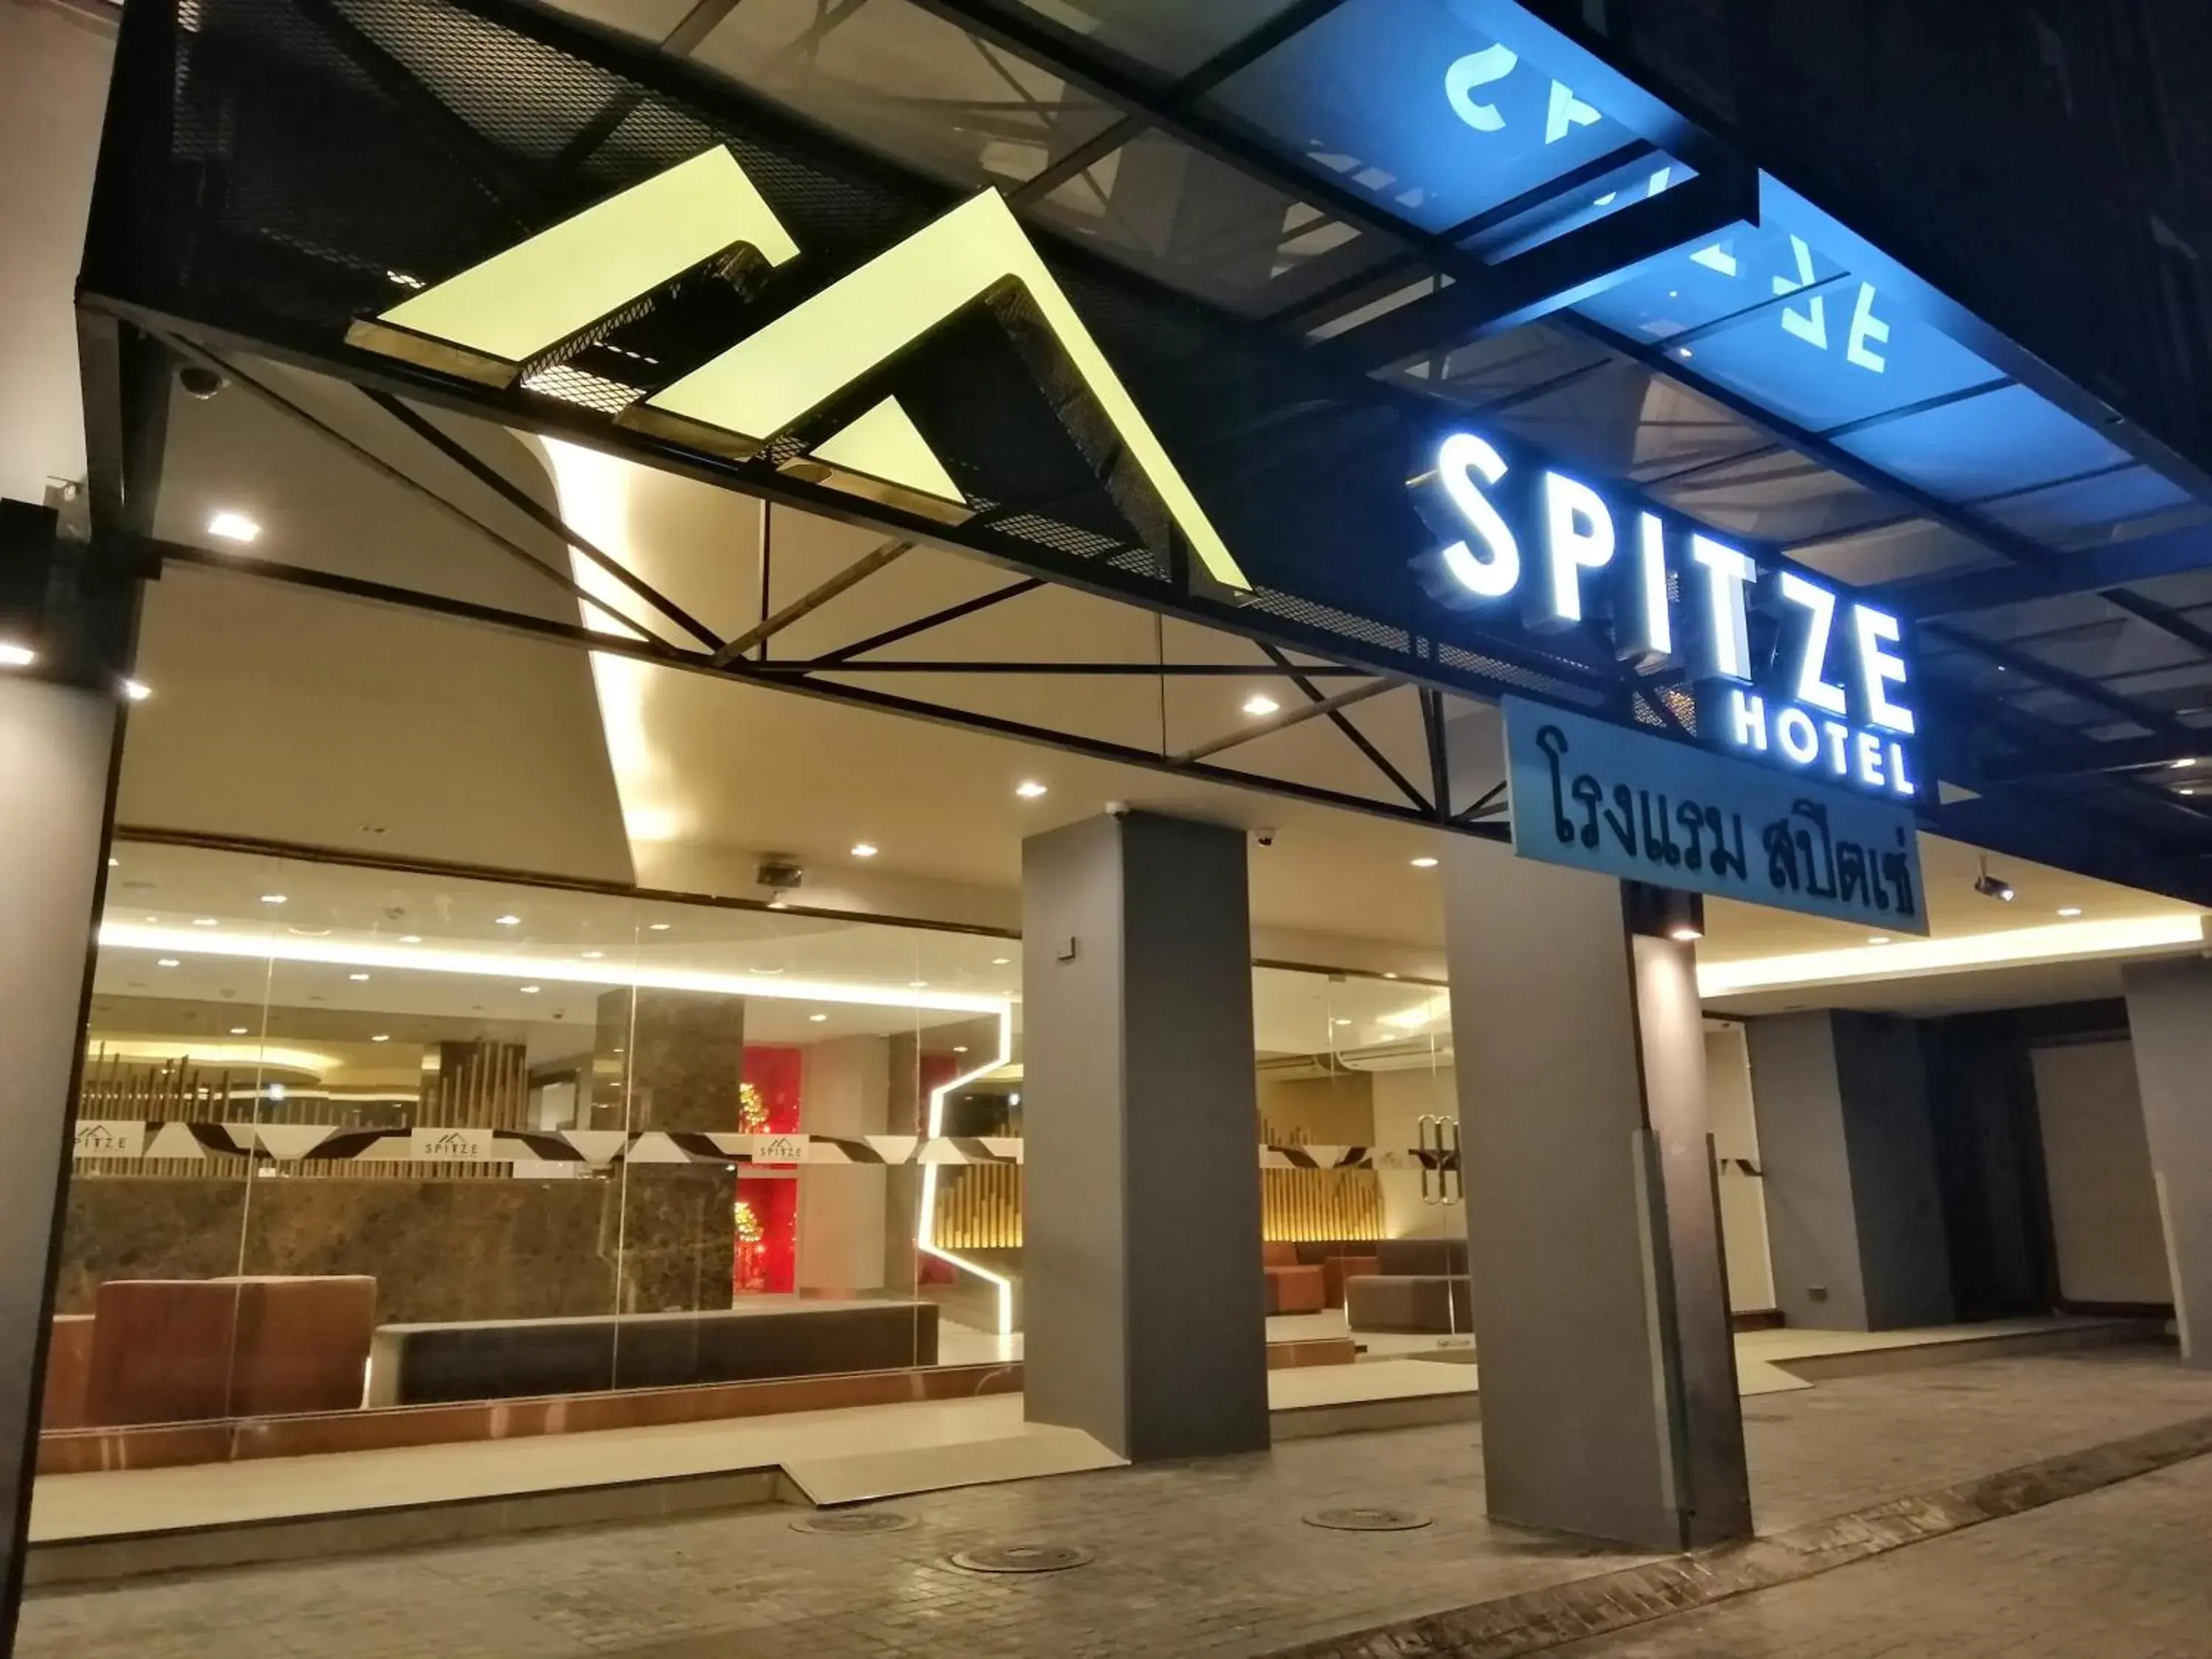 Night in Spittze Hotel Pratunam